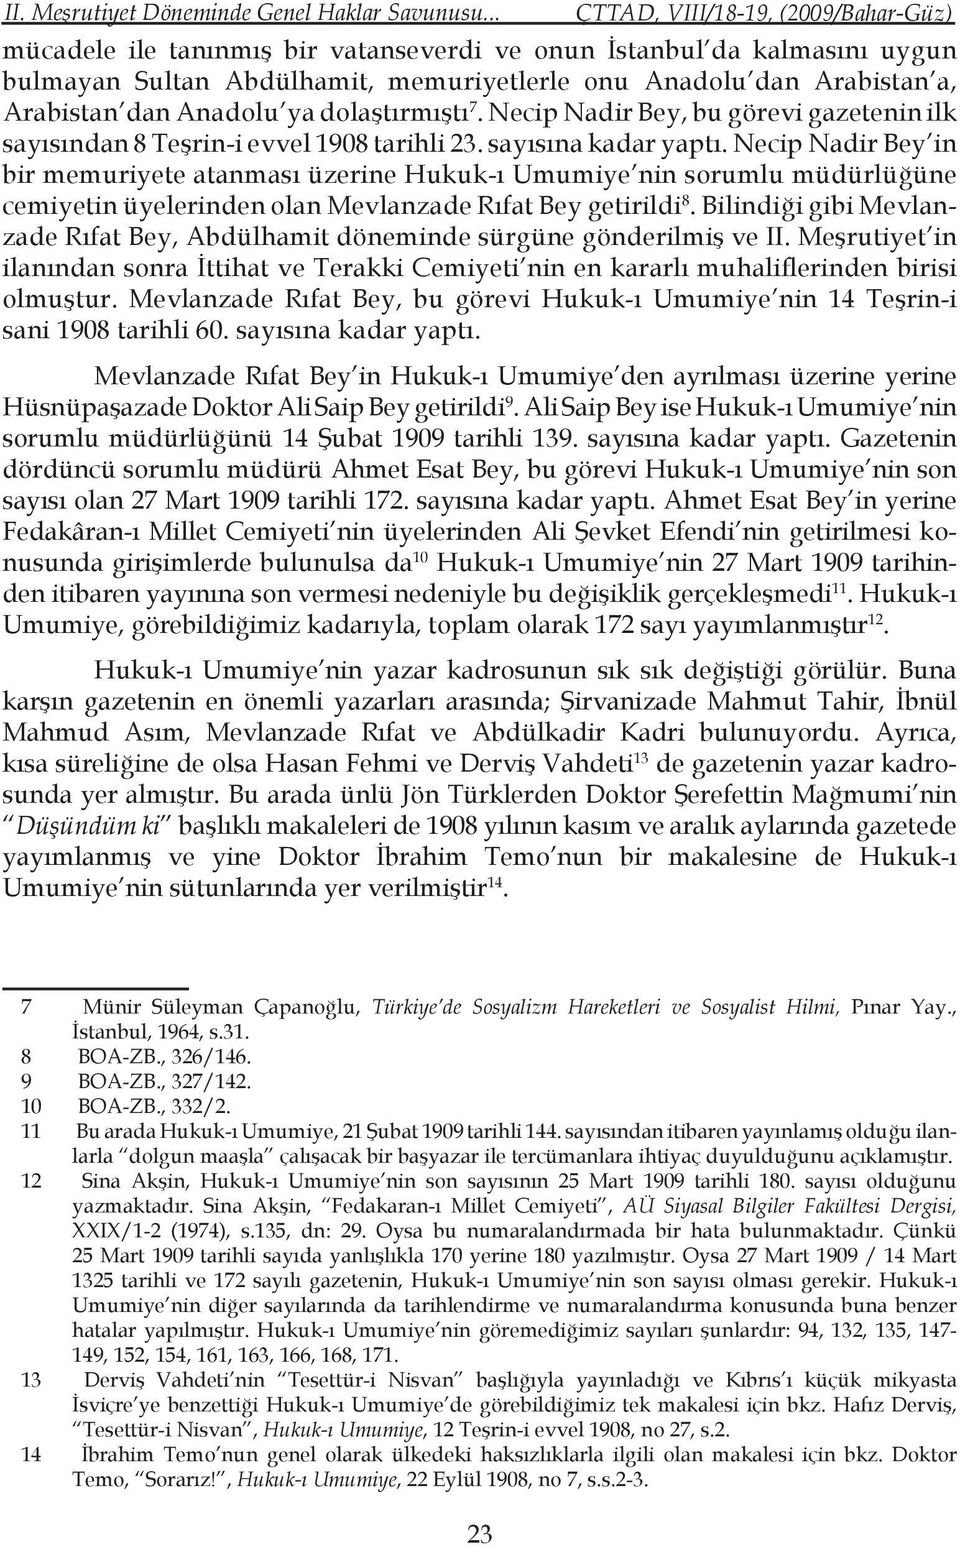 Necip Nadir Bey, bu görevi gazetenin ilk sayısından 8 Teşrin-i evvel 1908 tarihli 23. sayısına kadar yaptı.